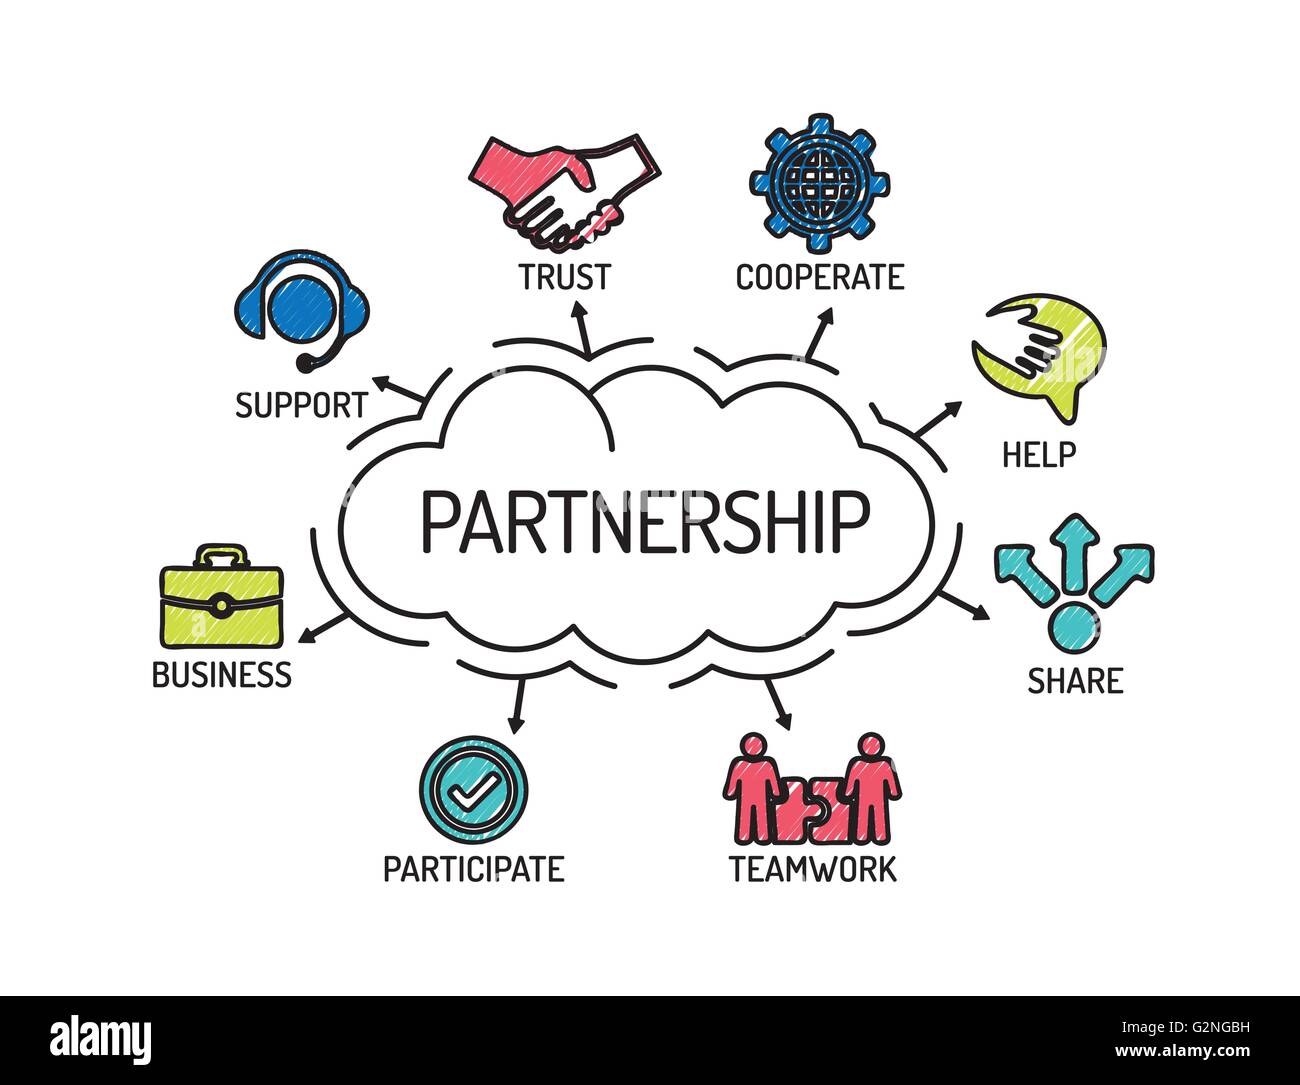 Accordo di partenariato. Grafico con le parole chiave e le icone. Schizzo Illustrazione Vettoriale